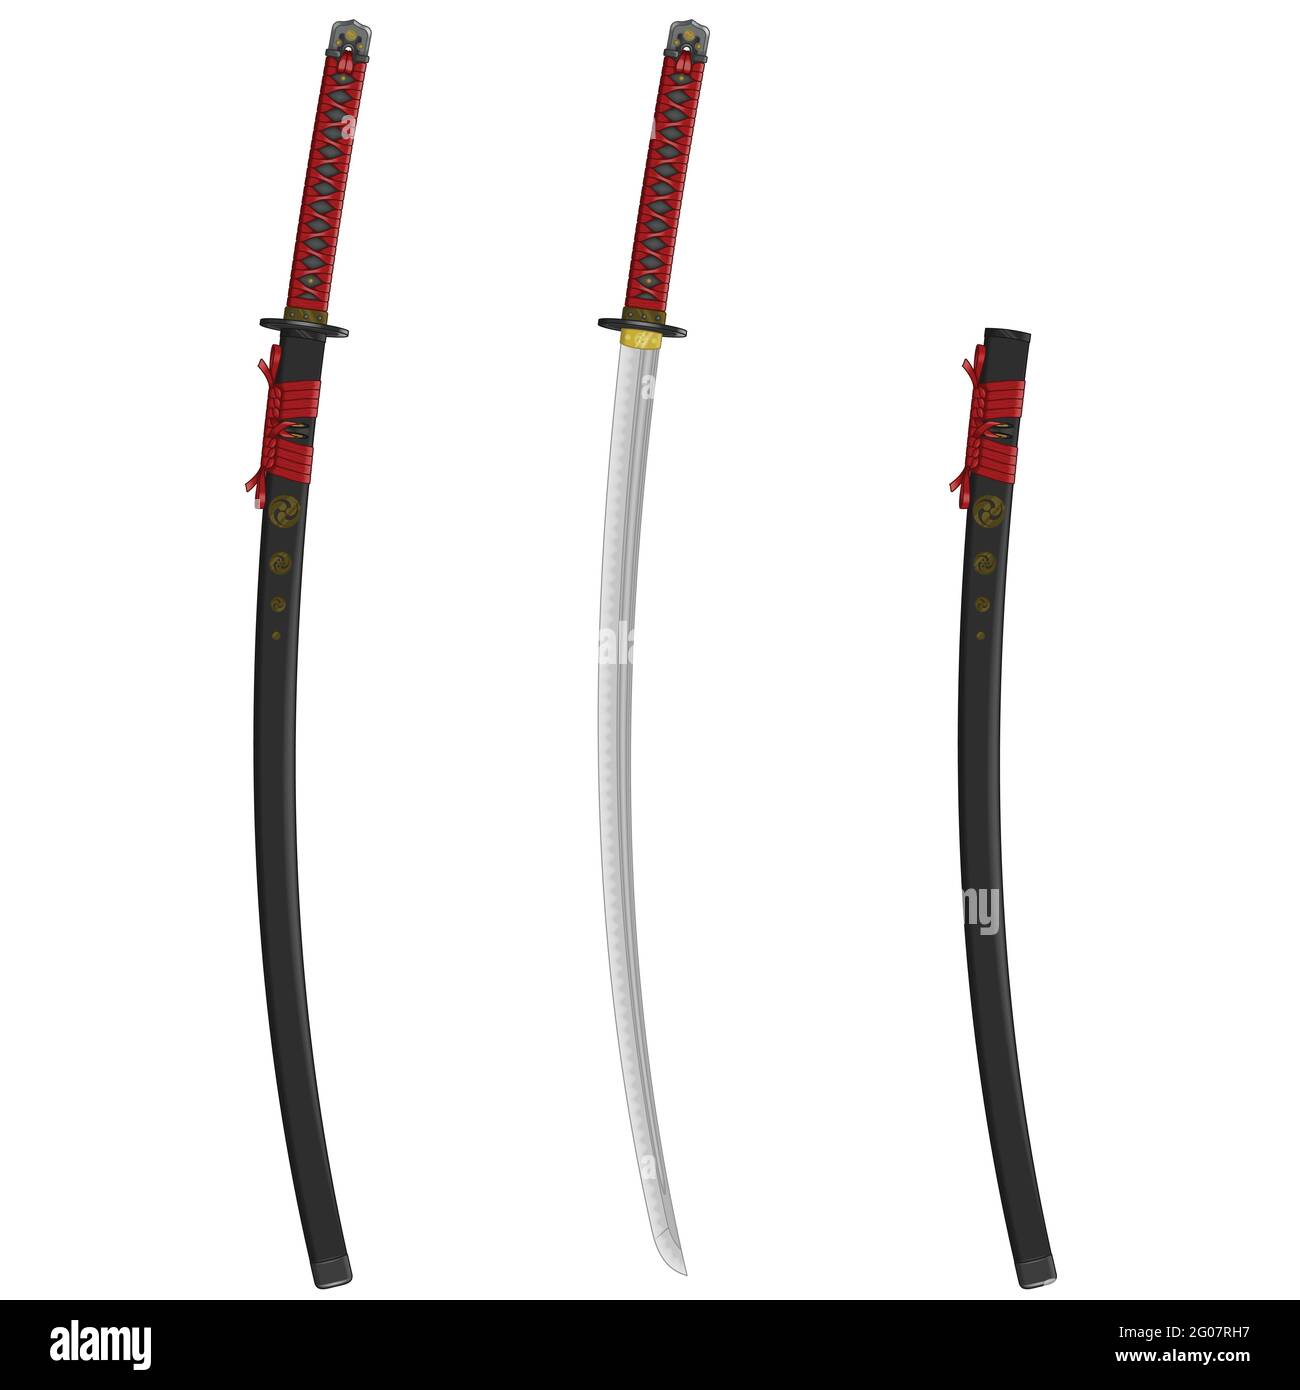 Vektor-Design eines Katana Samurai Schwerter, Katana Schwert aus dem alten feudalen japan, von Samurai Krieger verwendet Stock Vektor